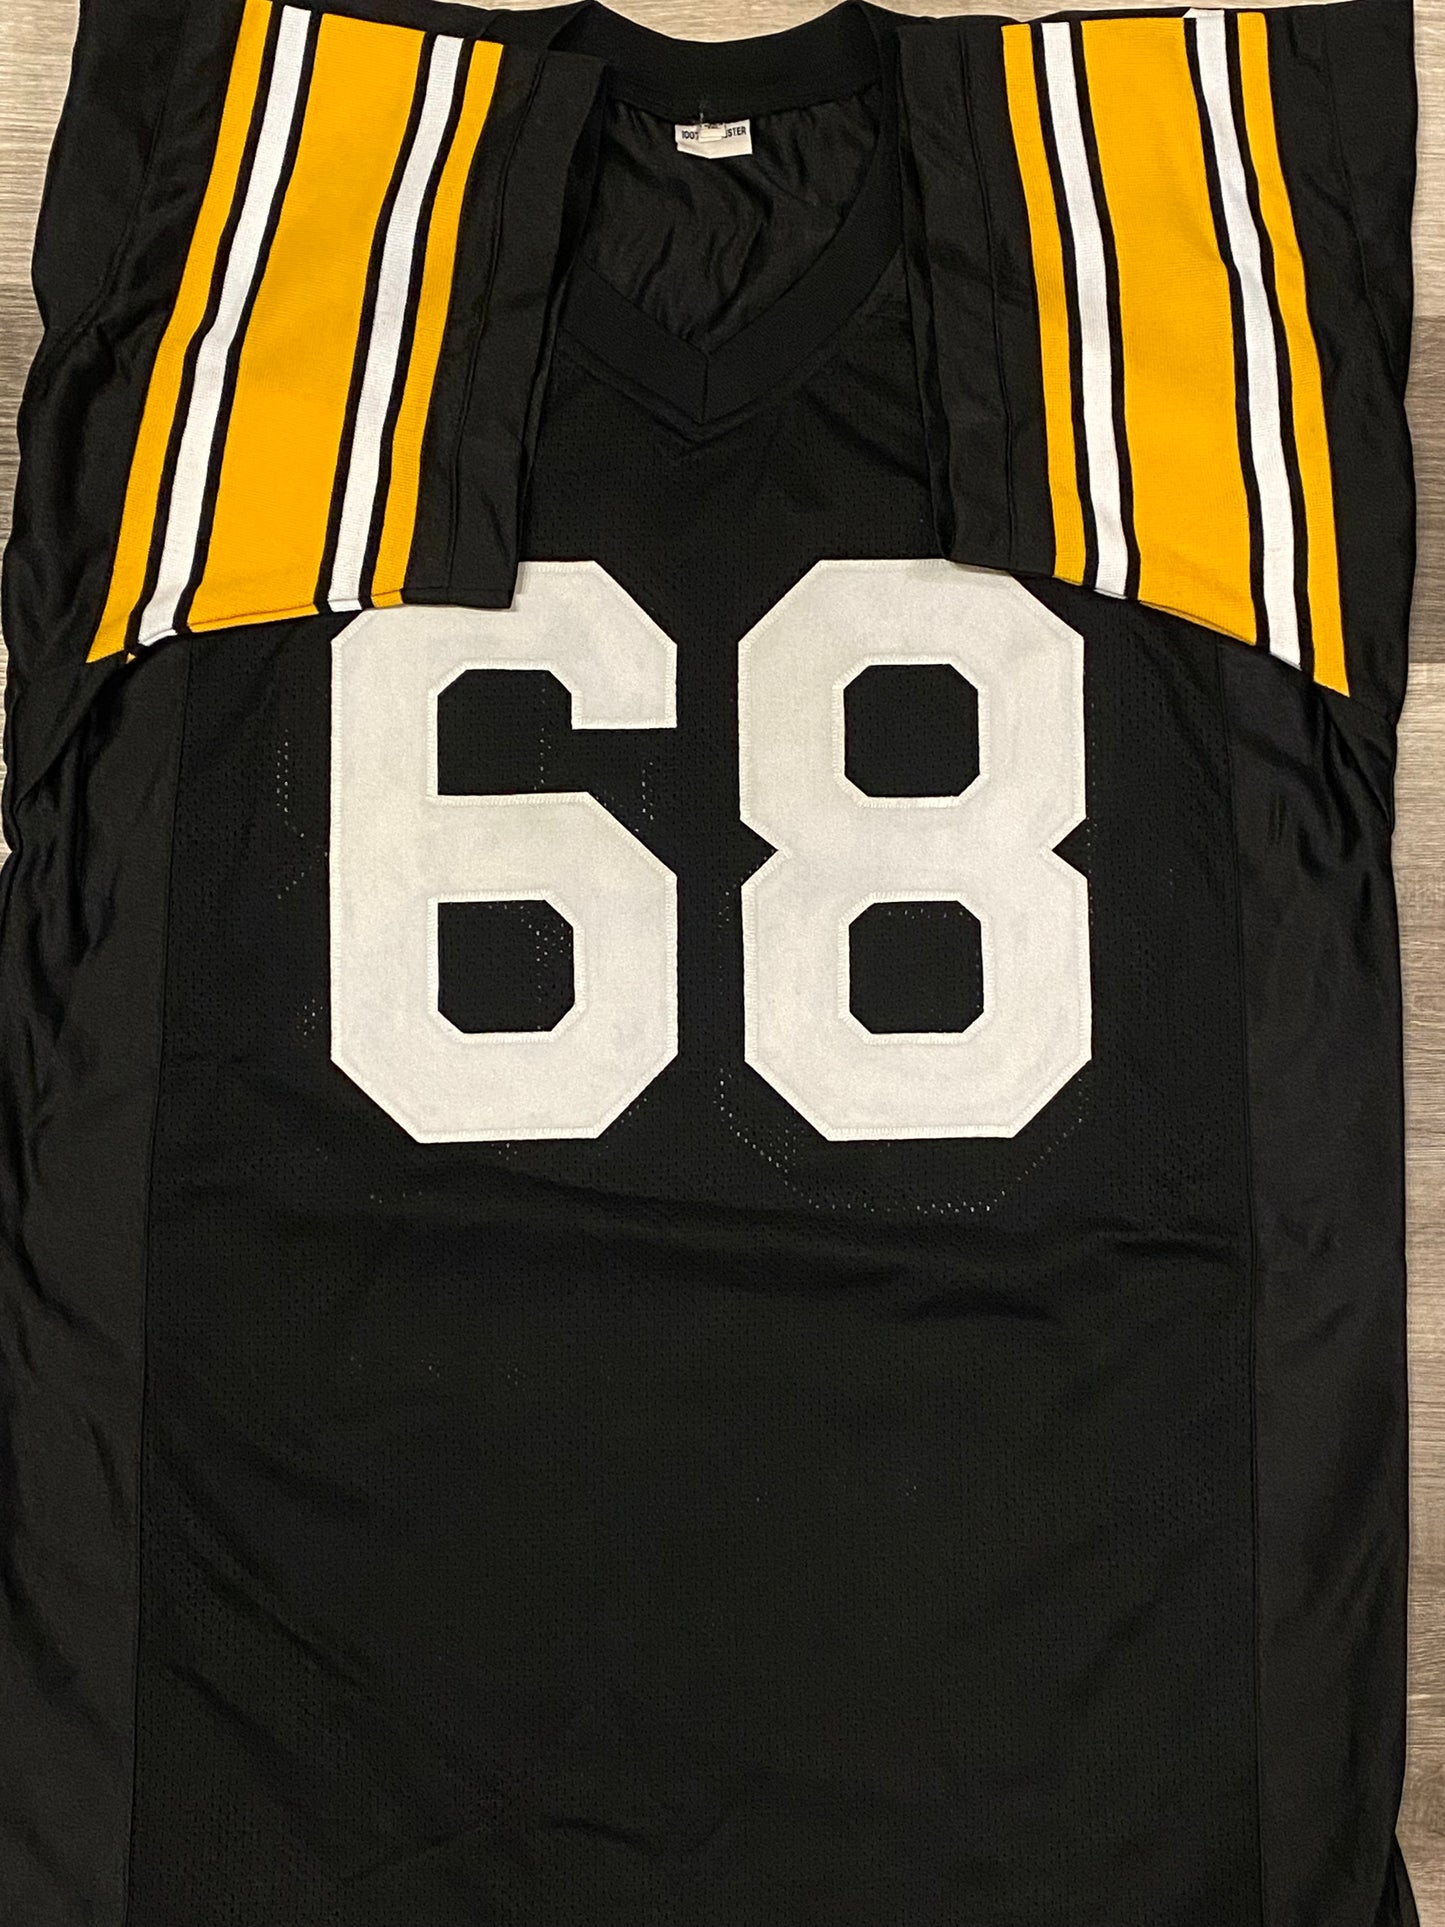 L.C. Greenwood signed custom jersey (JSA COA)